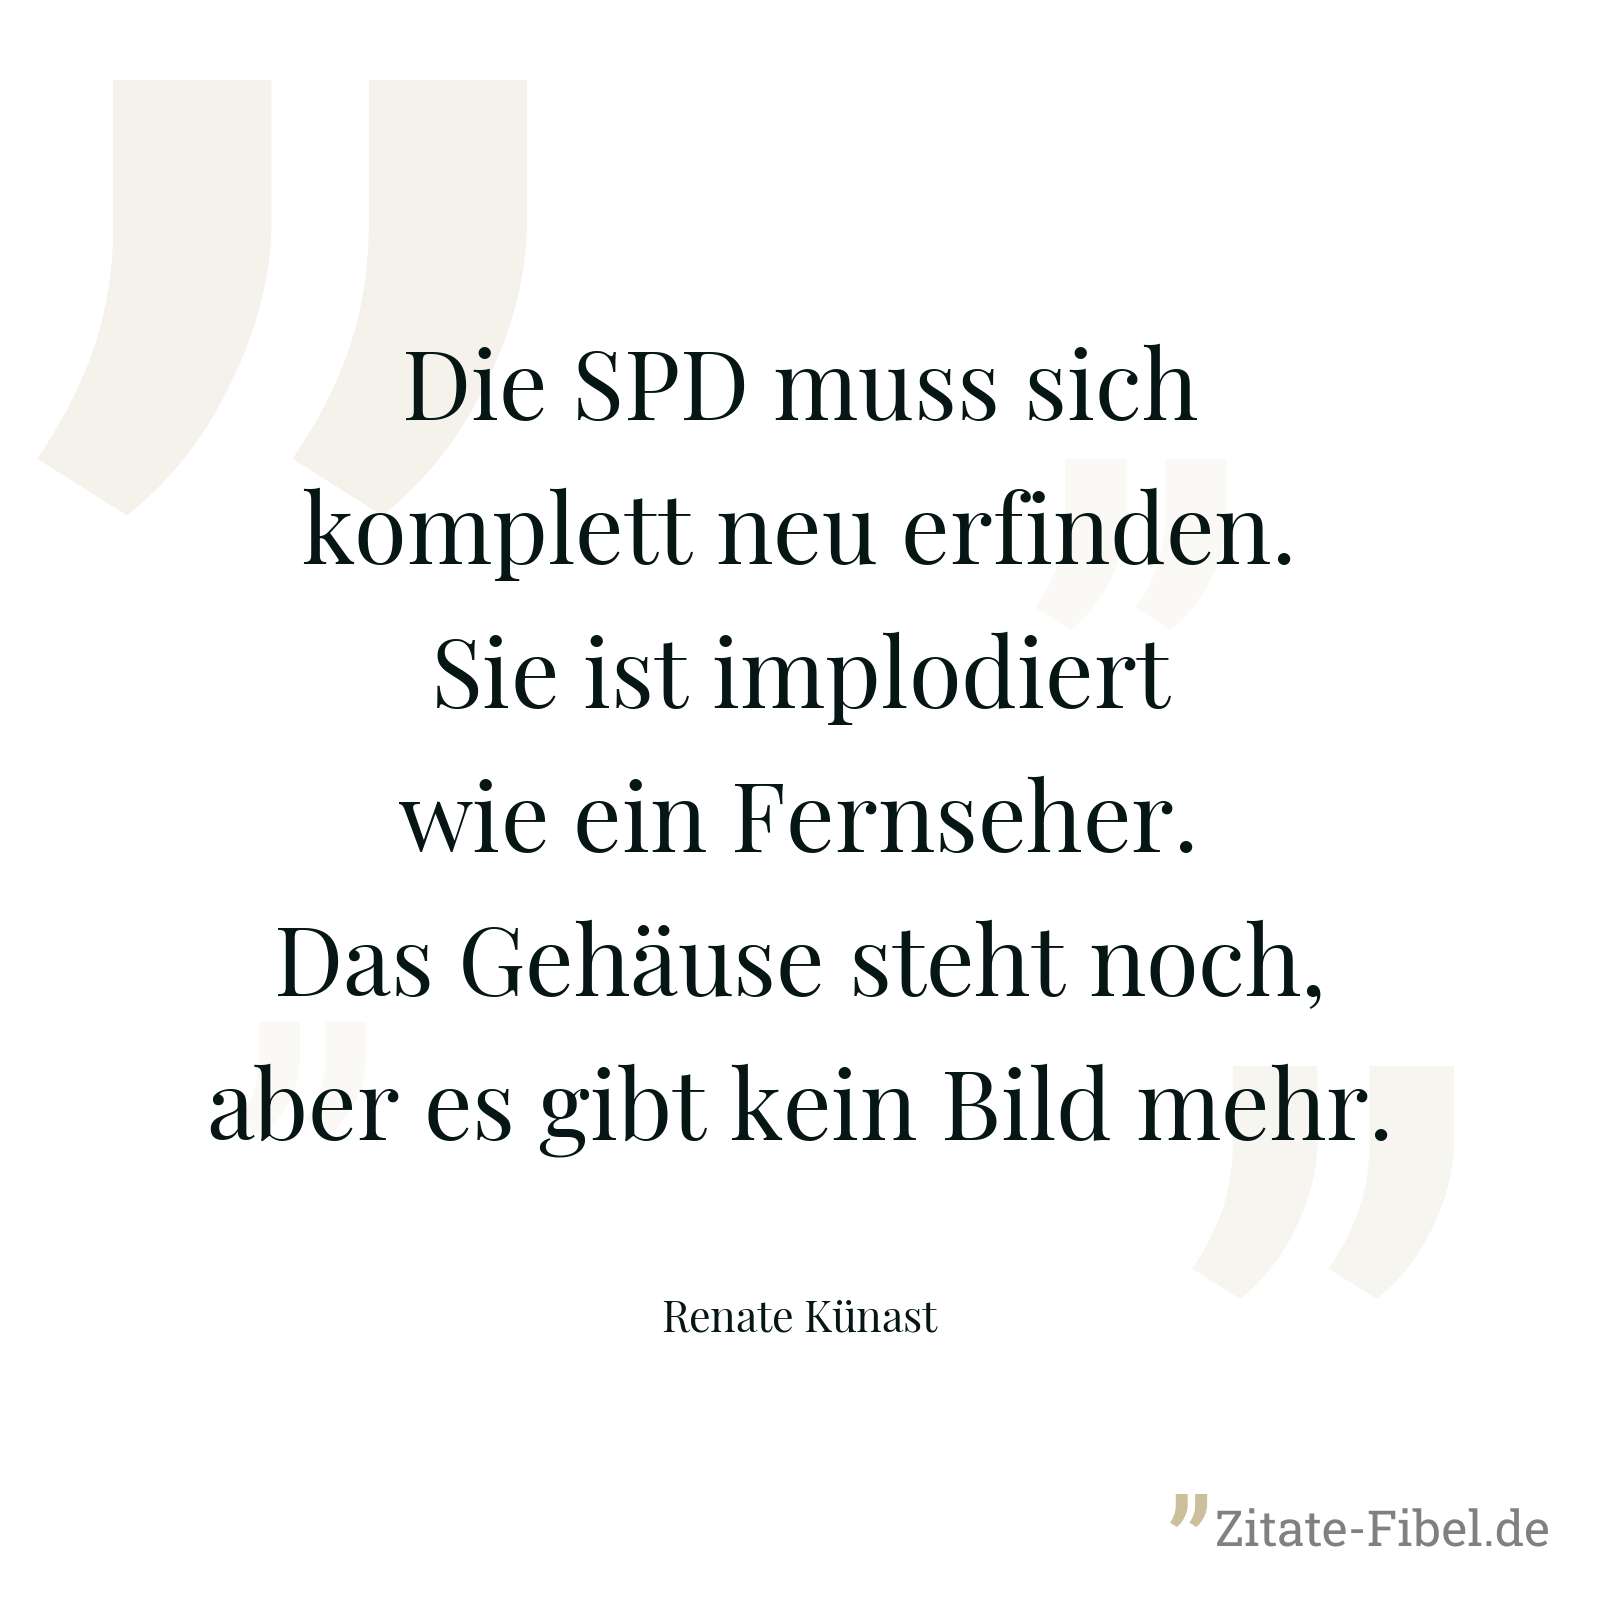 Die SPD muss sich komplett neu erfinden. Sie ist implodiert wie ein Fernseher. Das Gehäuse steht noch, aber es gibt kein Bild mehr. - Renate Künast